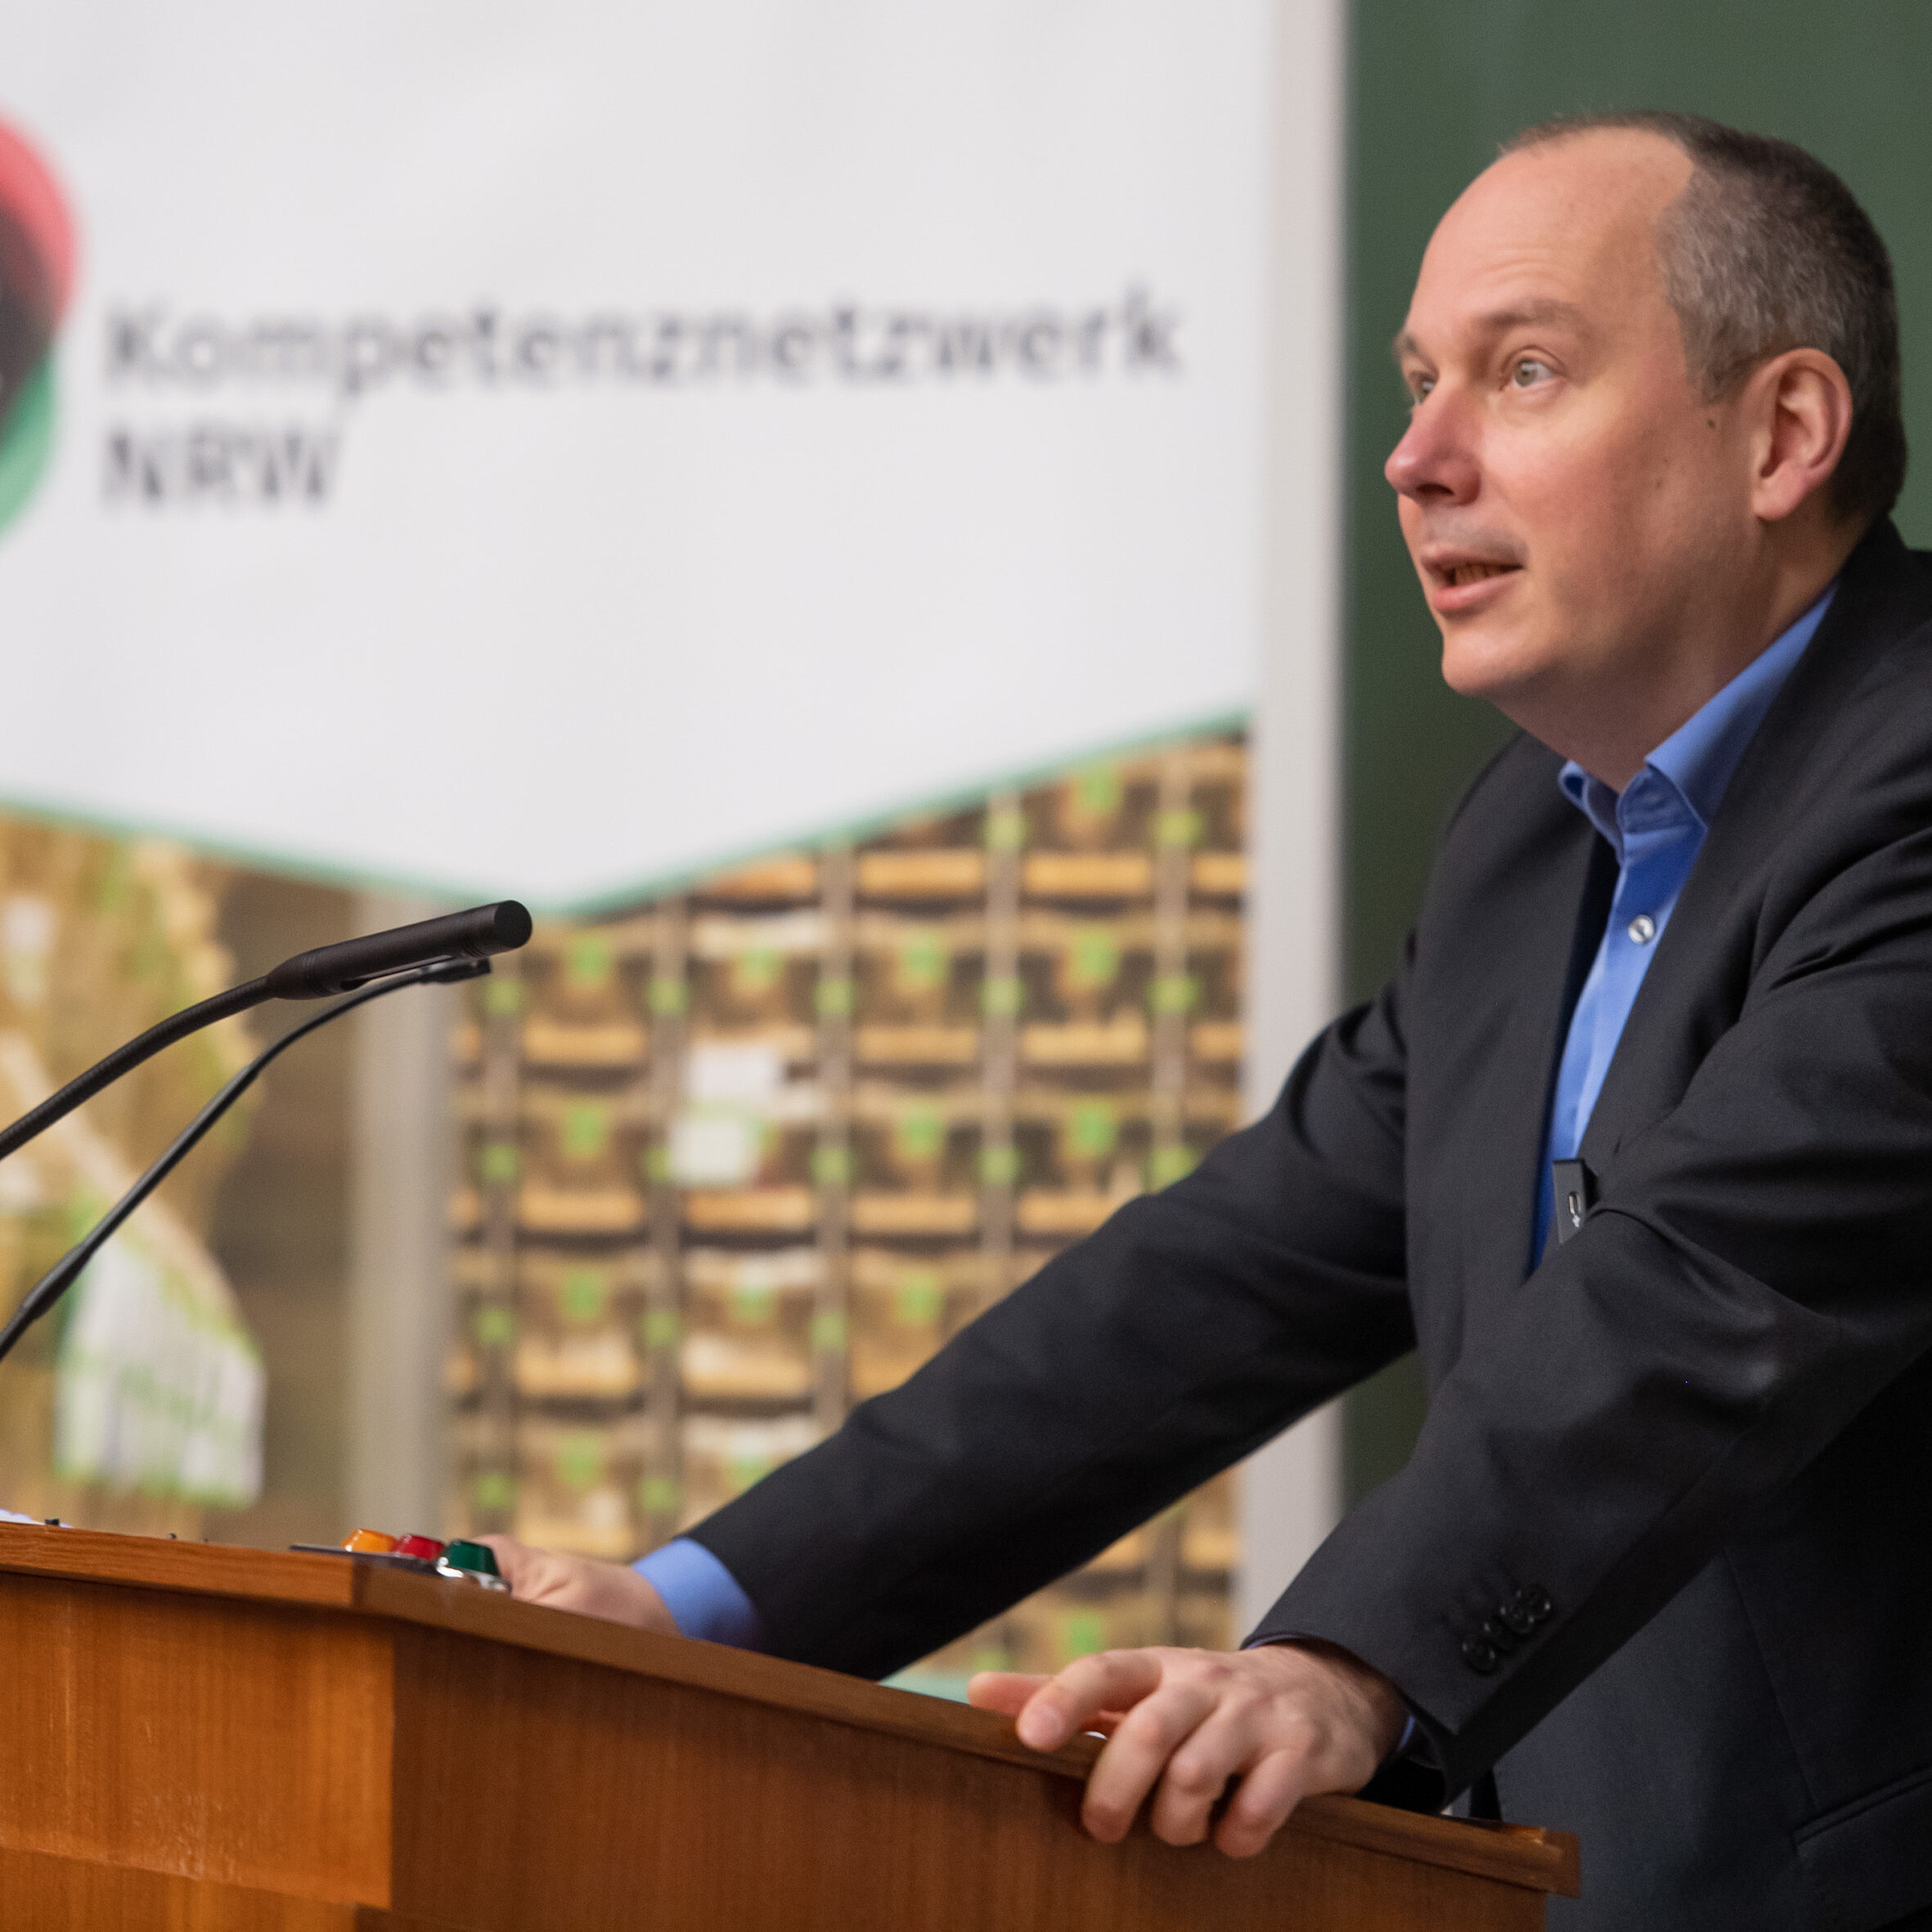 Grußwort Dekan Prof. Weber: Mann im schwarzgrauen Anzug mit hellblauem Hemd hält mit Blick ins Publikum eine Rede am Rednerpult in einem Hörsaal